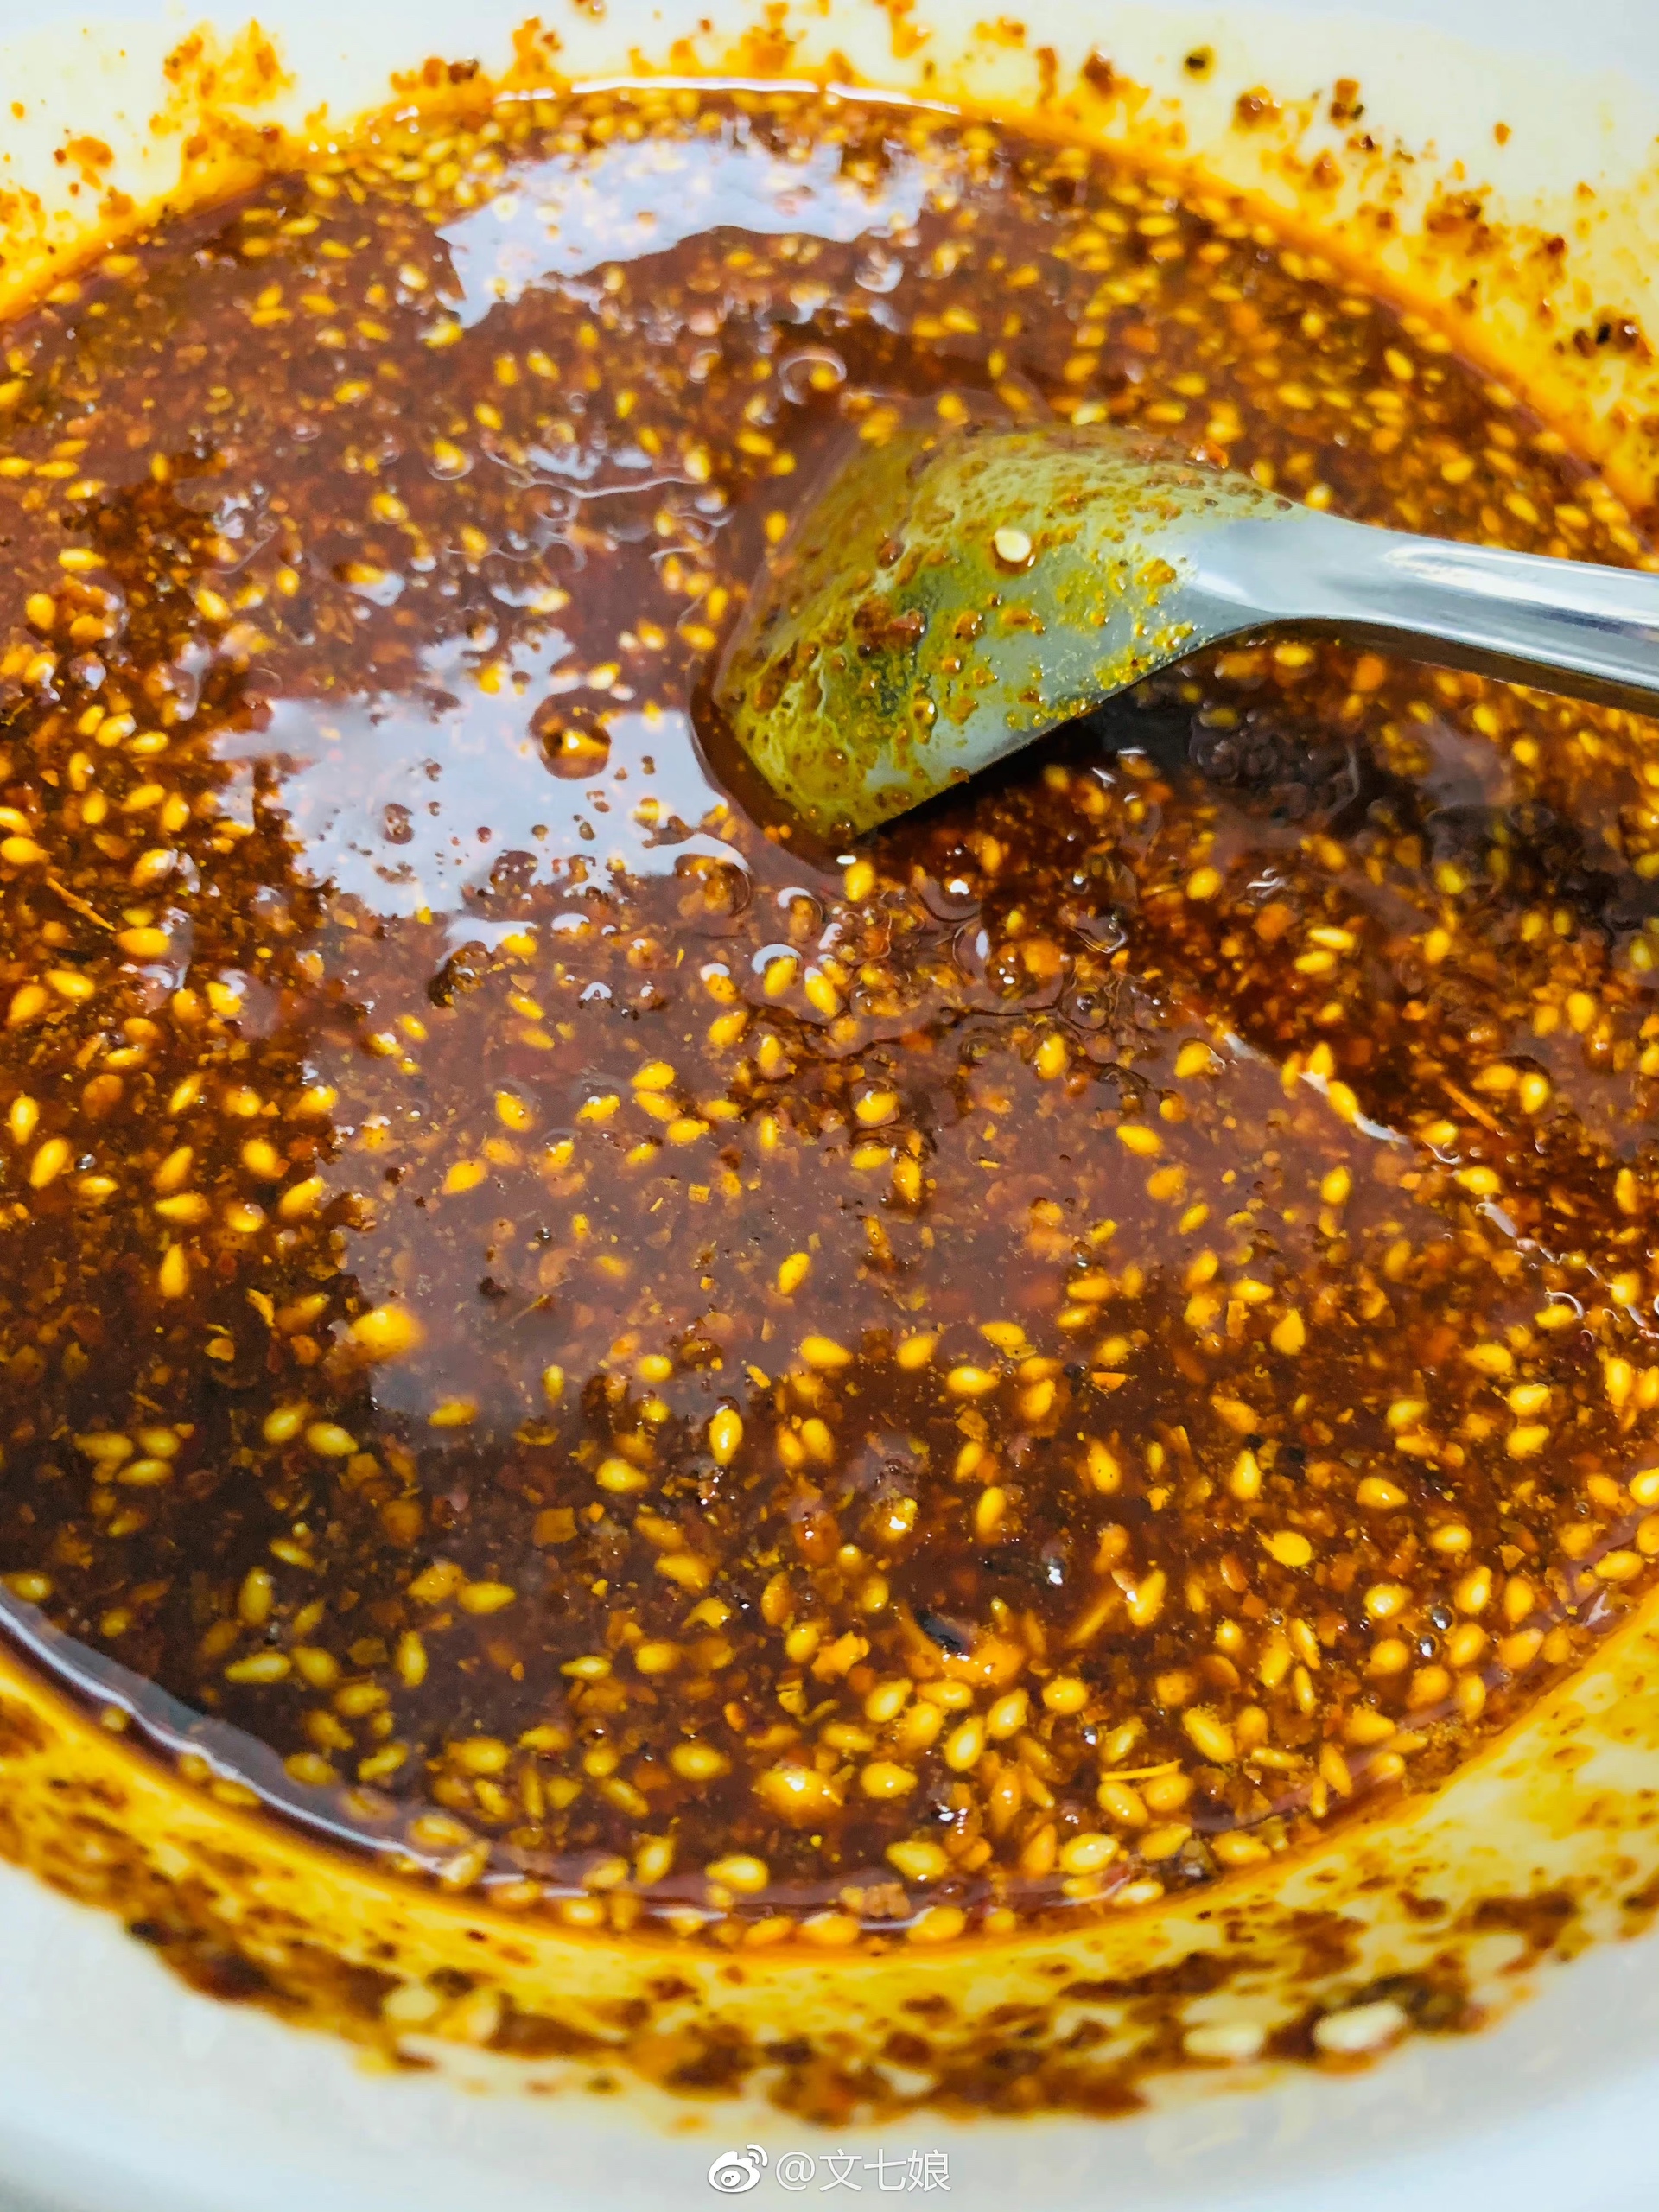 浅浅复刻一下『马三洋芋片』的辣椒油的做法